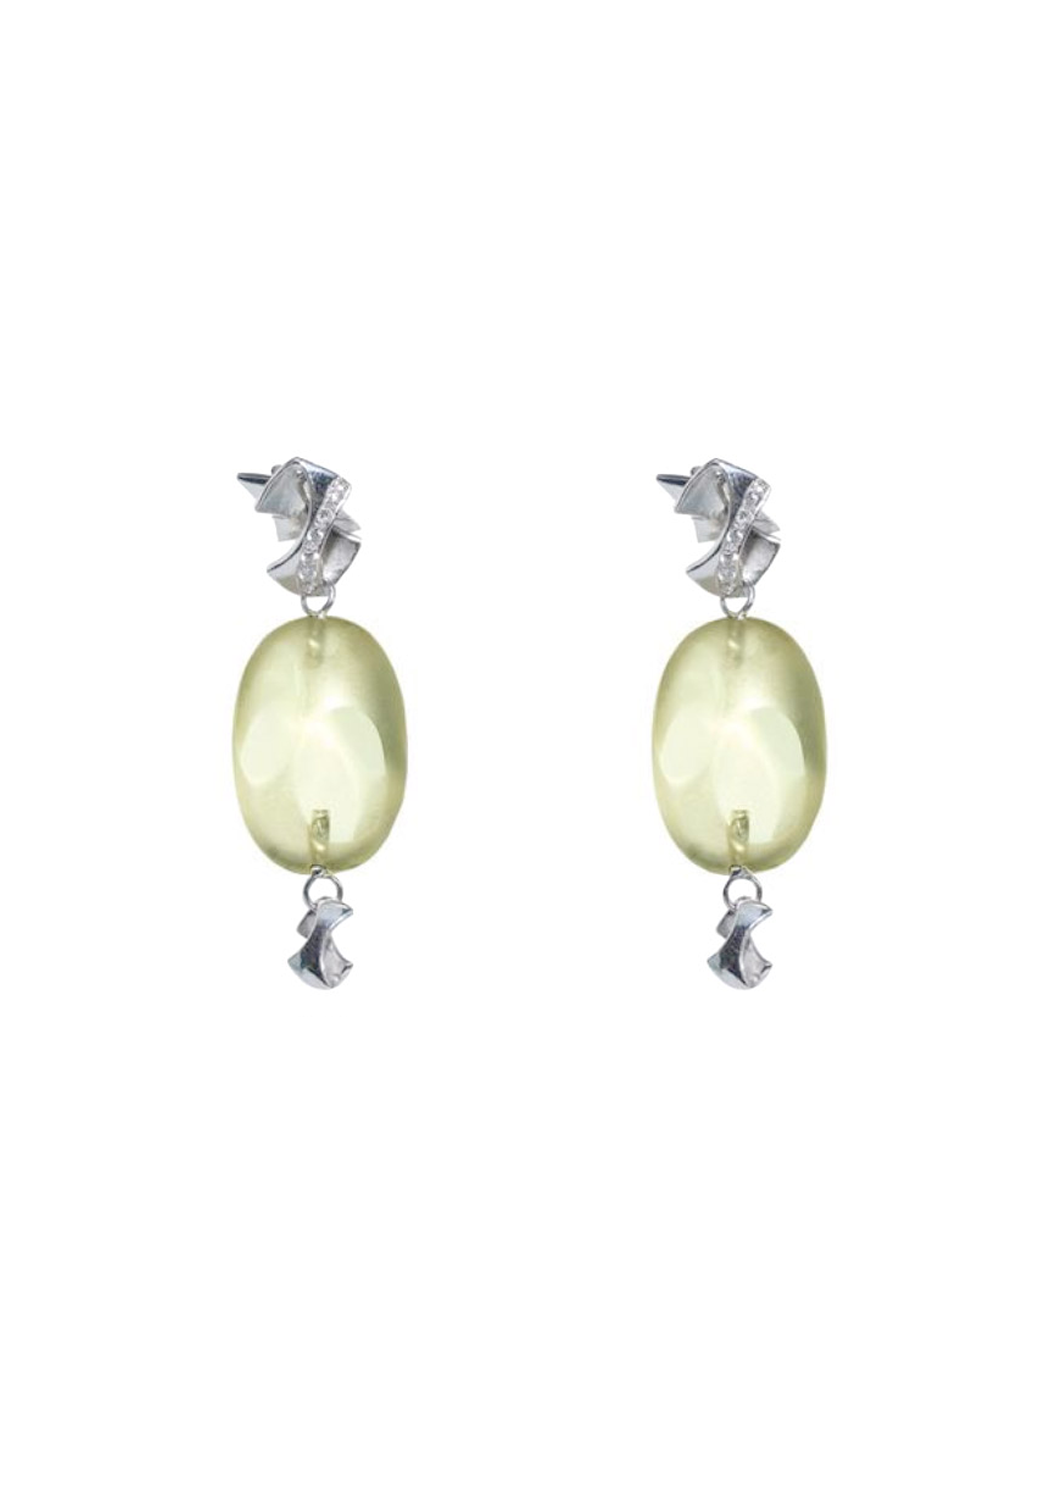 Balocchi Preziosi 18KWG Diamond & Lemon Quartz Drop Earrings | OsterJewelers.com